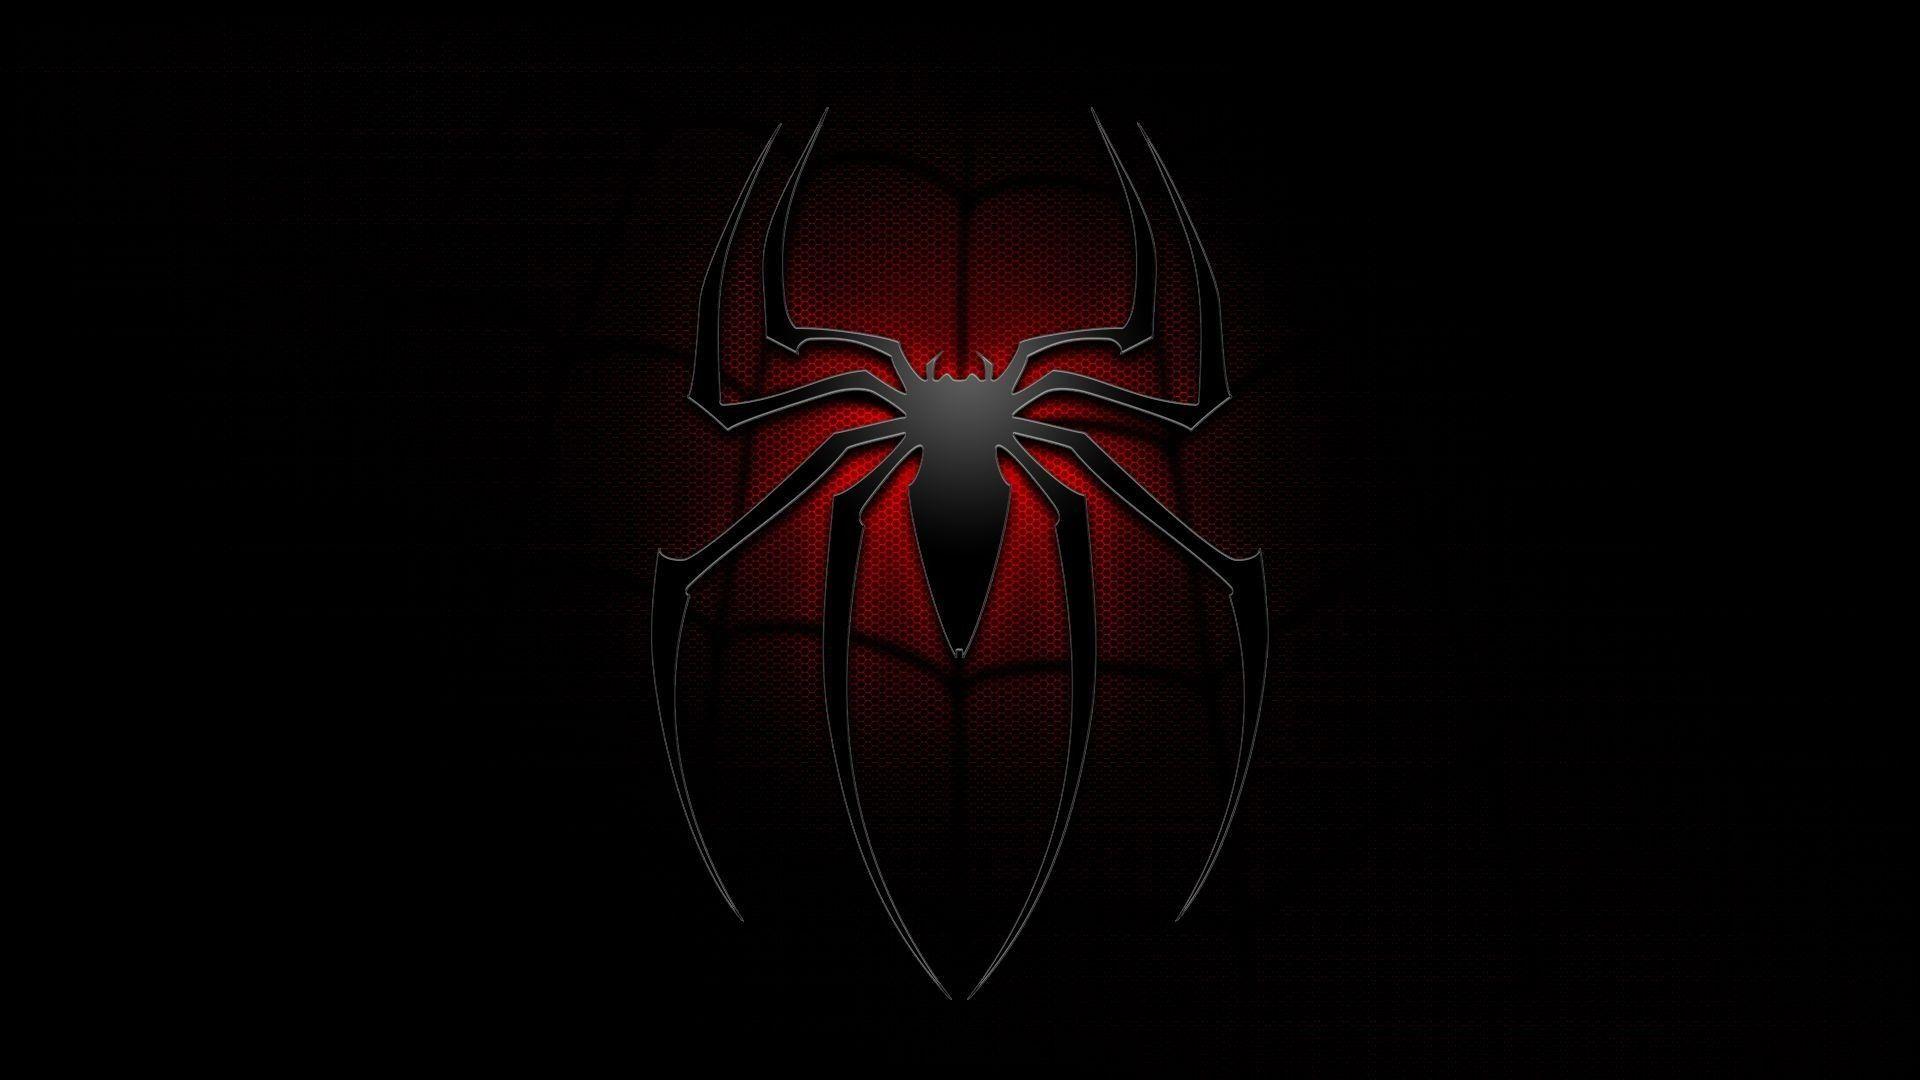 Vượt qua mọi thử thách với hình nền PC 4K đen bí ẩn của nhân vật Spider-Man. Đắm chìm trong sự phiêu lưu hấp dẫn và cảm nhận rõ nét những chi tiết tuyệt vời của hình nền. Cùng trải nghiệm cảm giác như thật khi theo dõi chân dung siêu anh hùng.